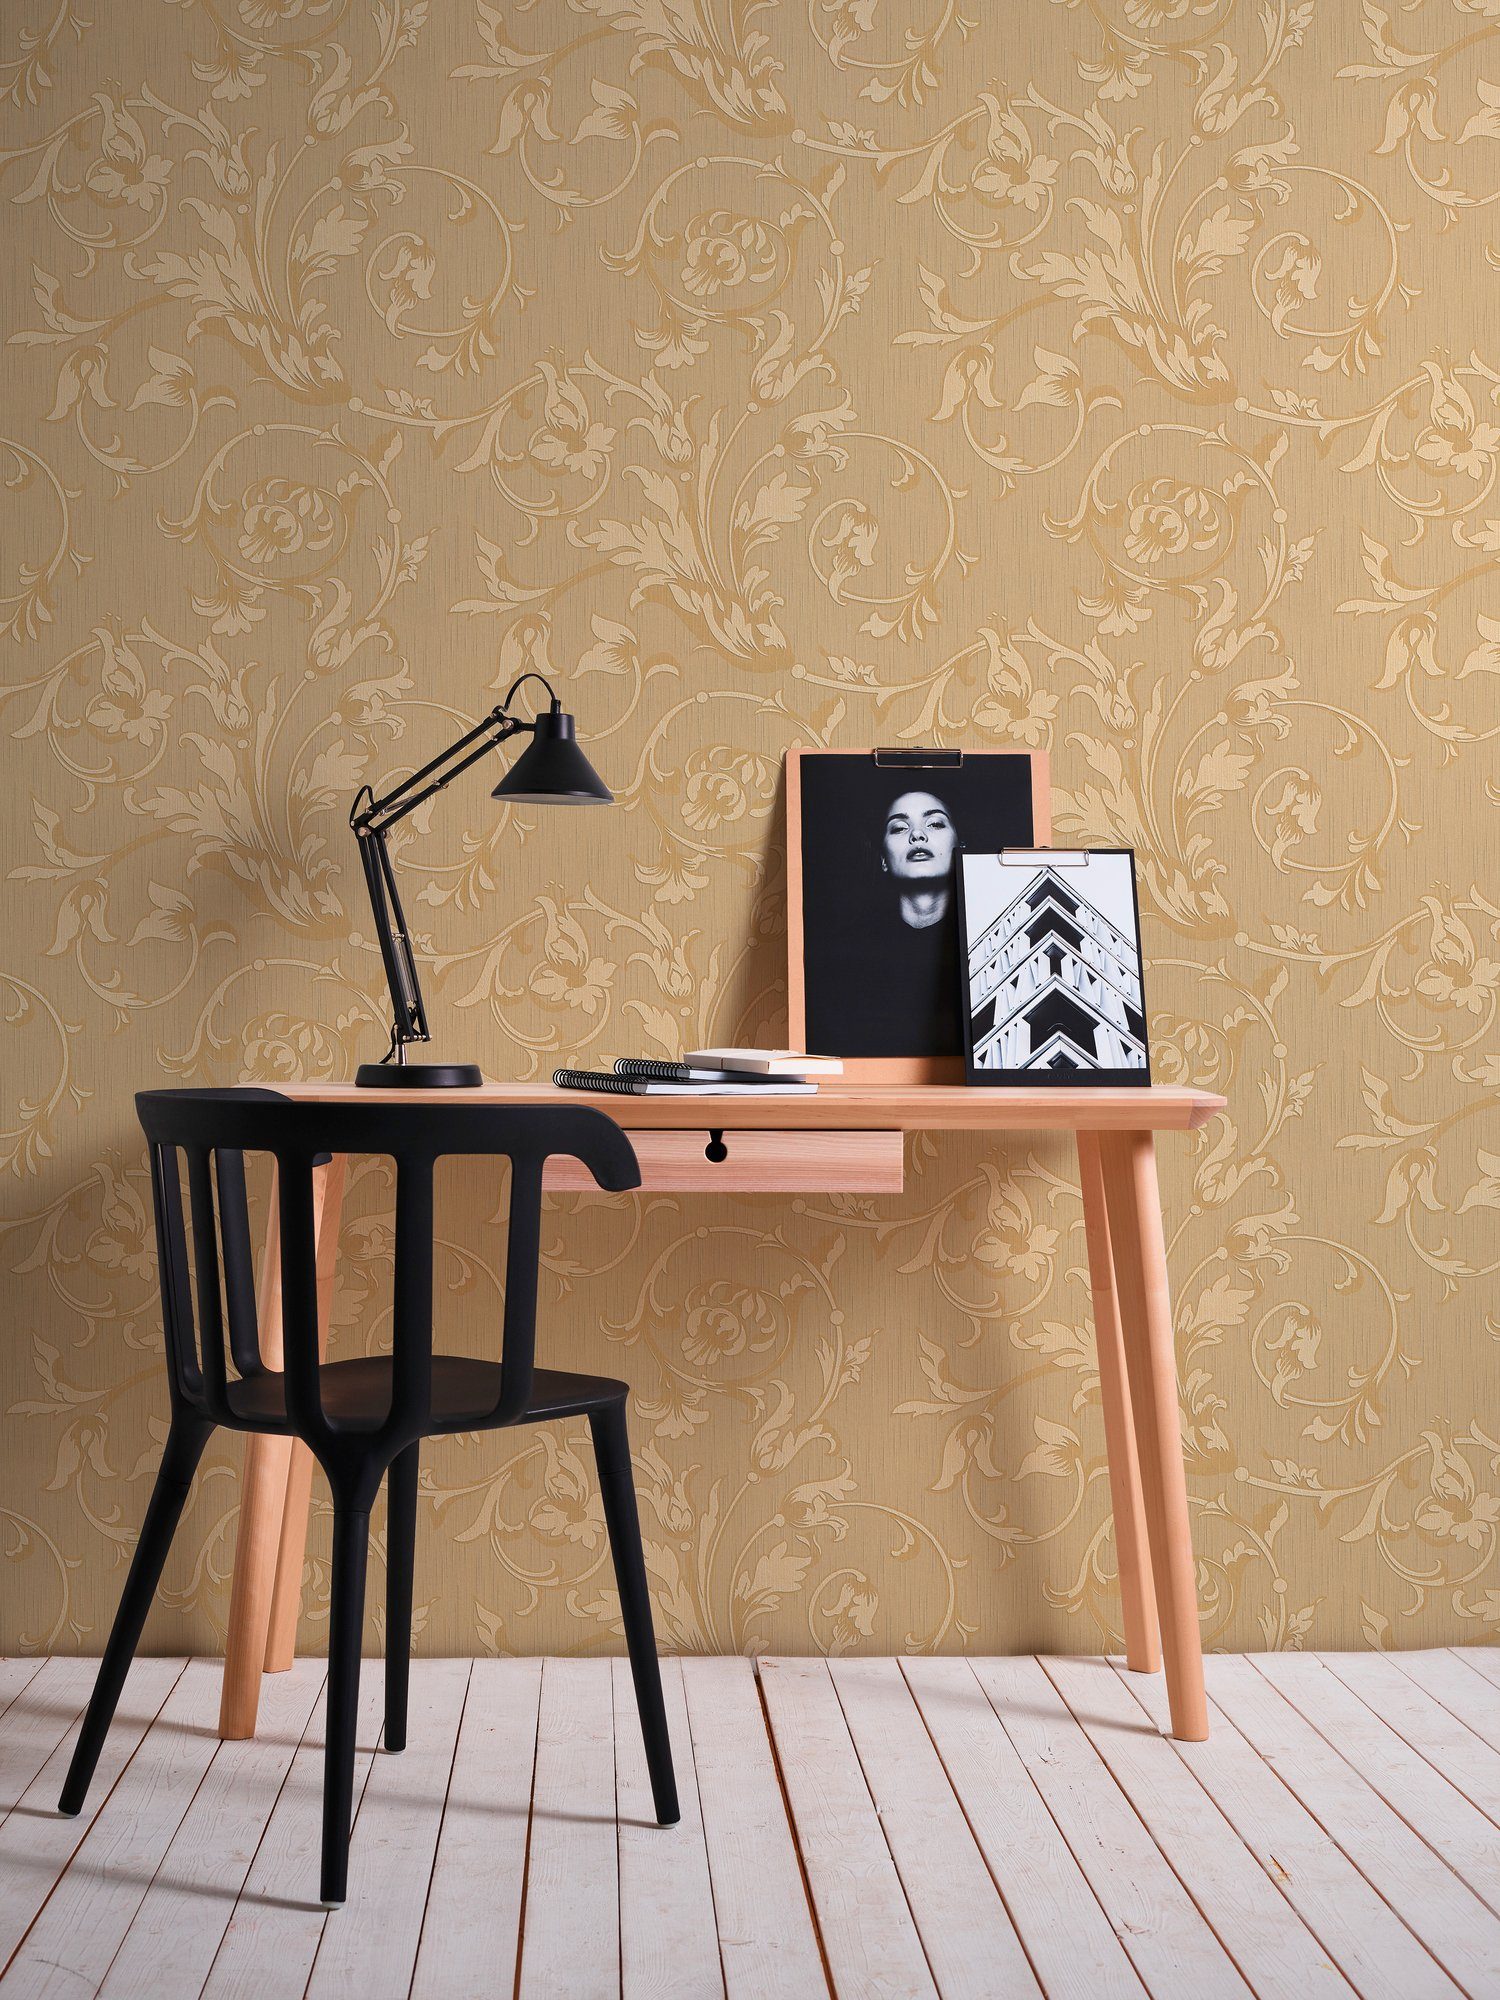 Tessuto, Barock, samtig, Paper Textiltapete Floral orange/beige floral, Architects Blumen Tapete